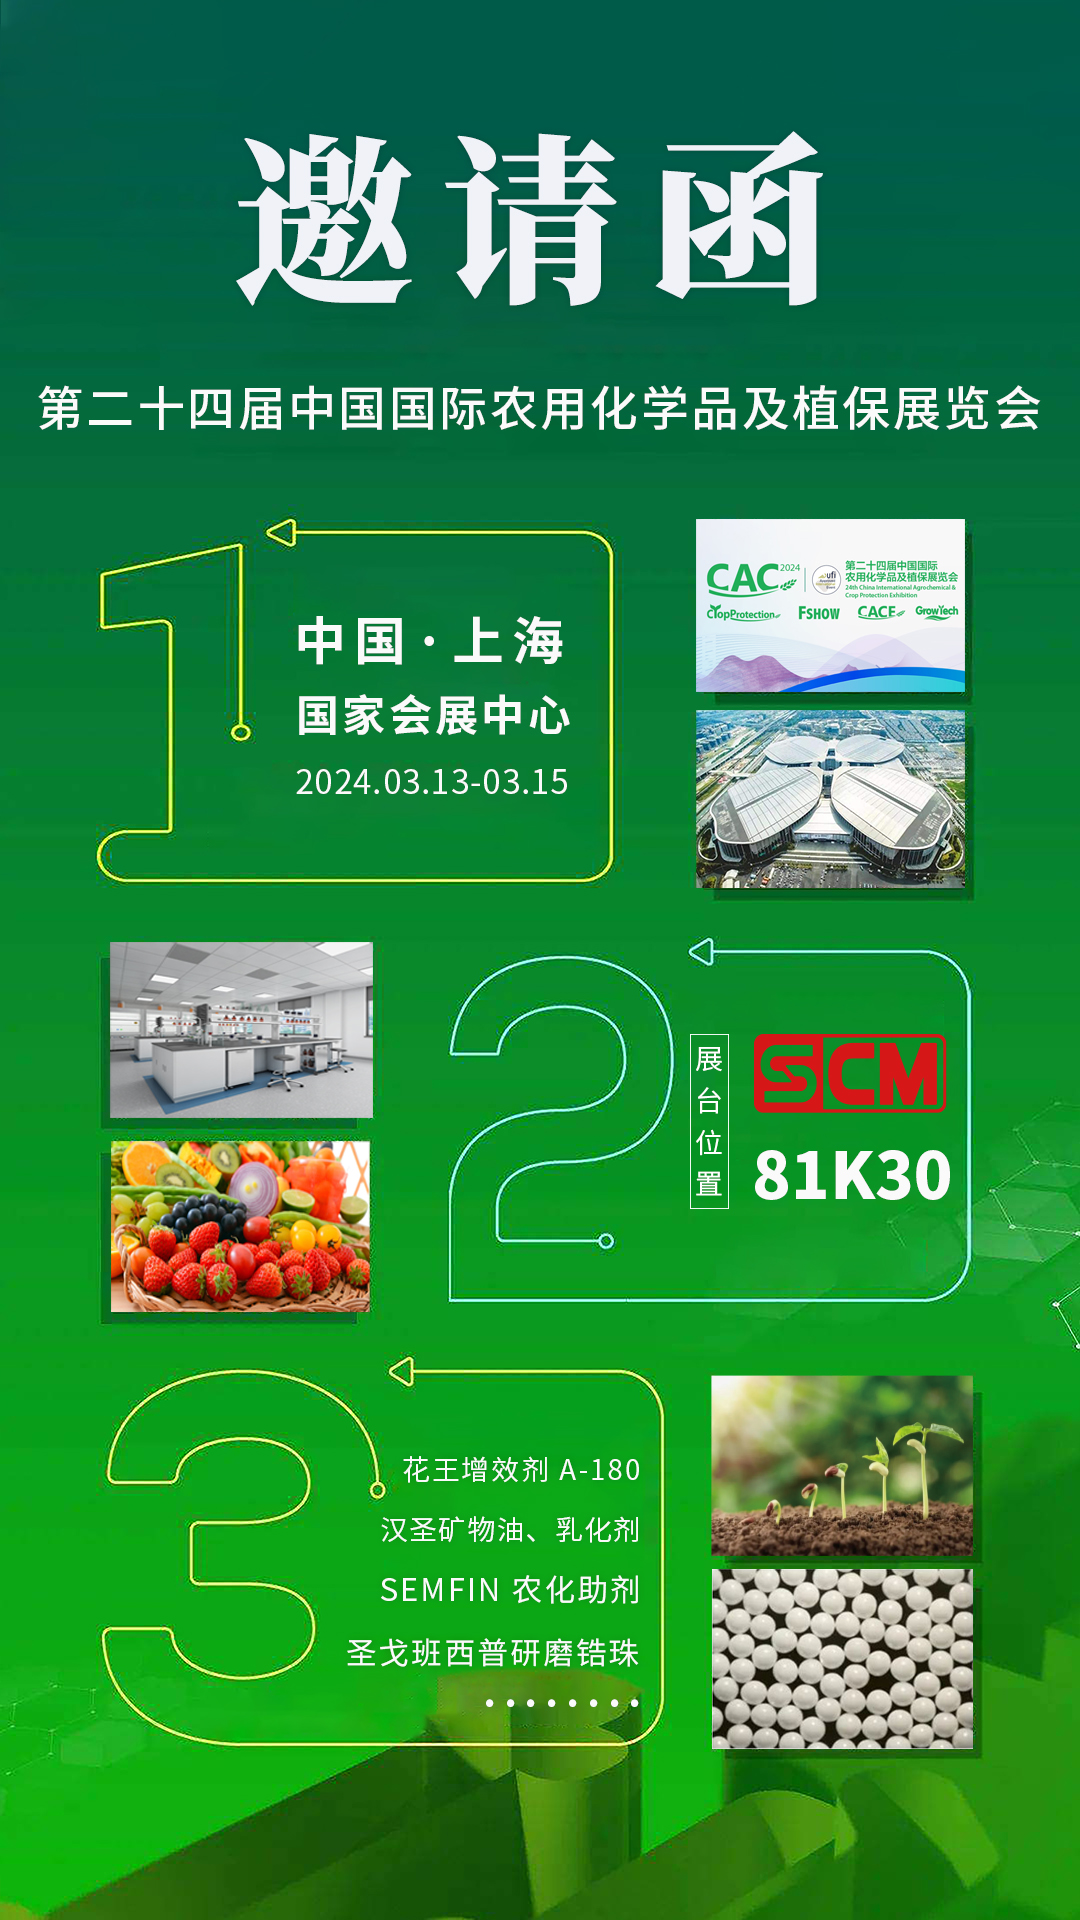 SCM上Ｗ鹆比松褪遣嘣迹诙十四届中国国际农用化学品及植保展览会